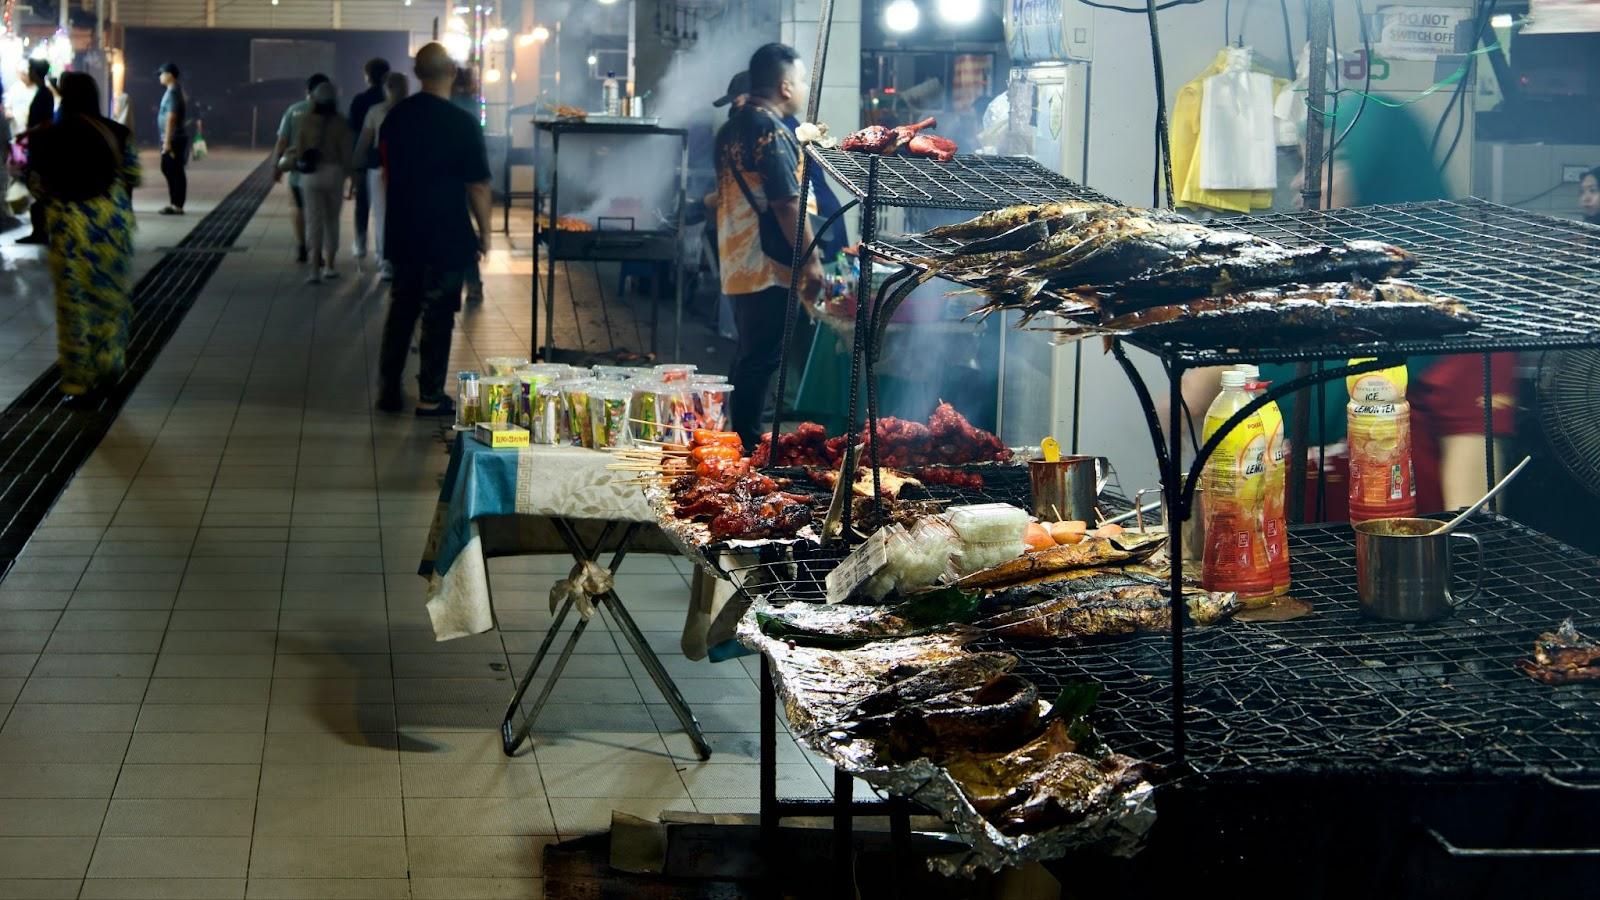 gadong night market in Bandar Seri Begawan